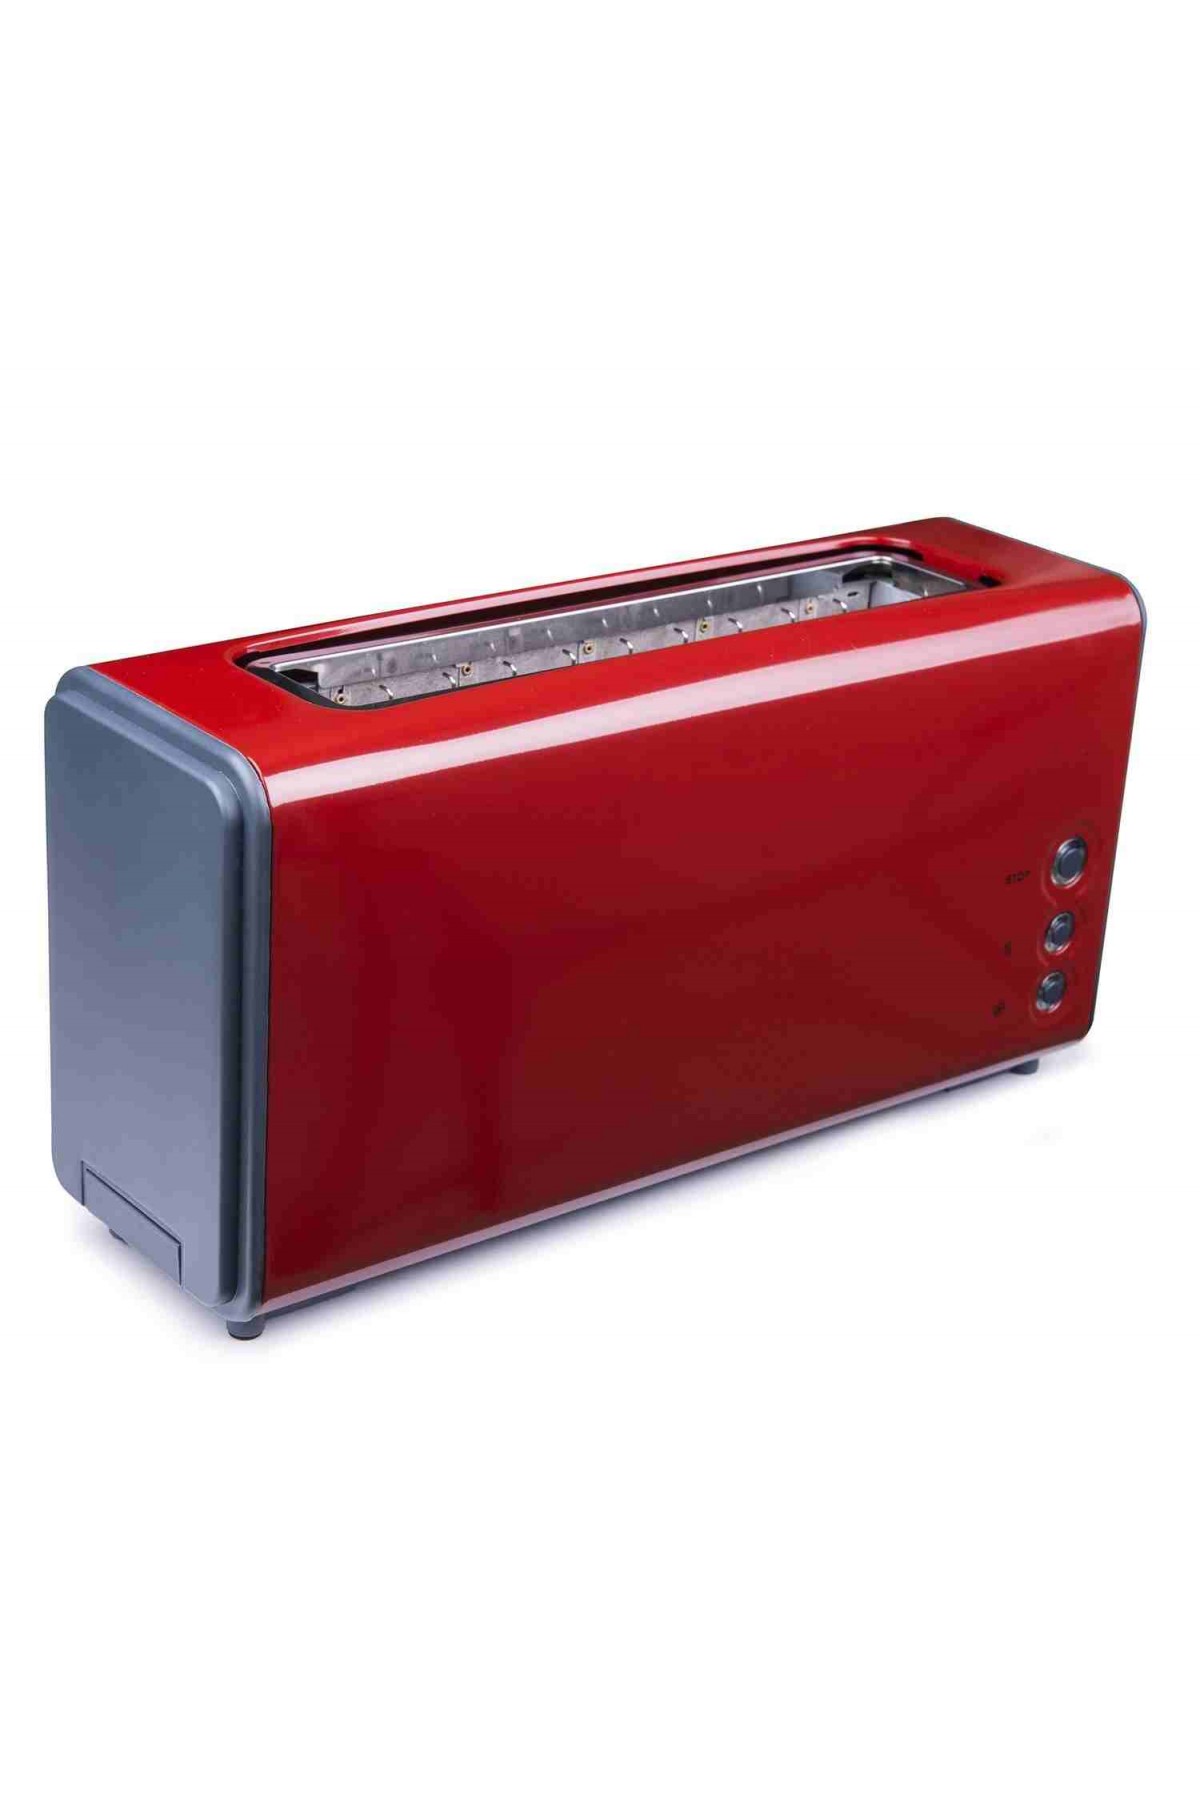 Arnica GH27020 KITIR Red Ekmek Kızartma Makinesi